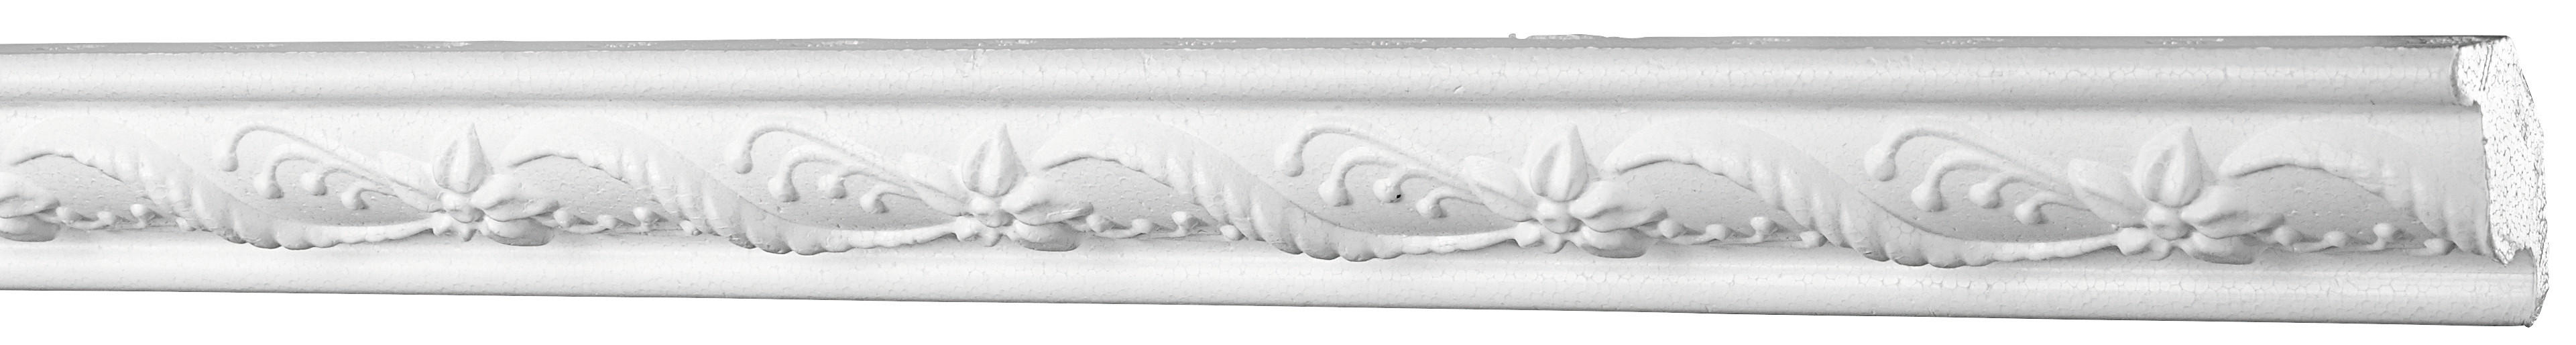 Zierprofil Weiß B/h/l: Ca. 1,5x2,5x200 Cm Zierprofil_g22 - weiß (200,00/1,50/2,50cm)